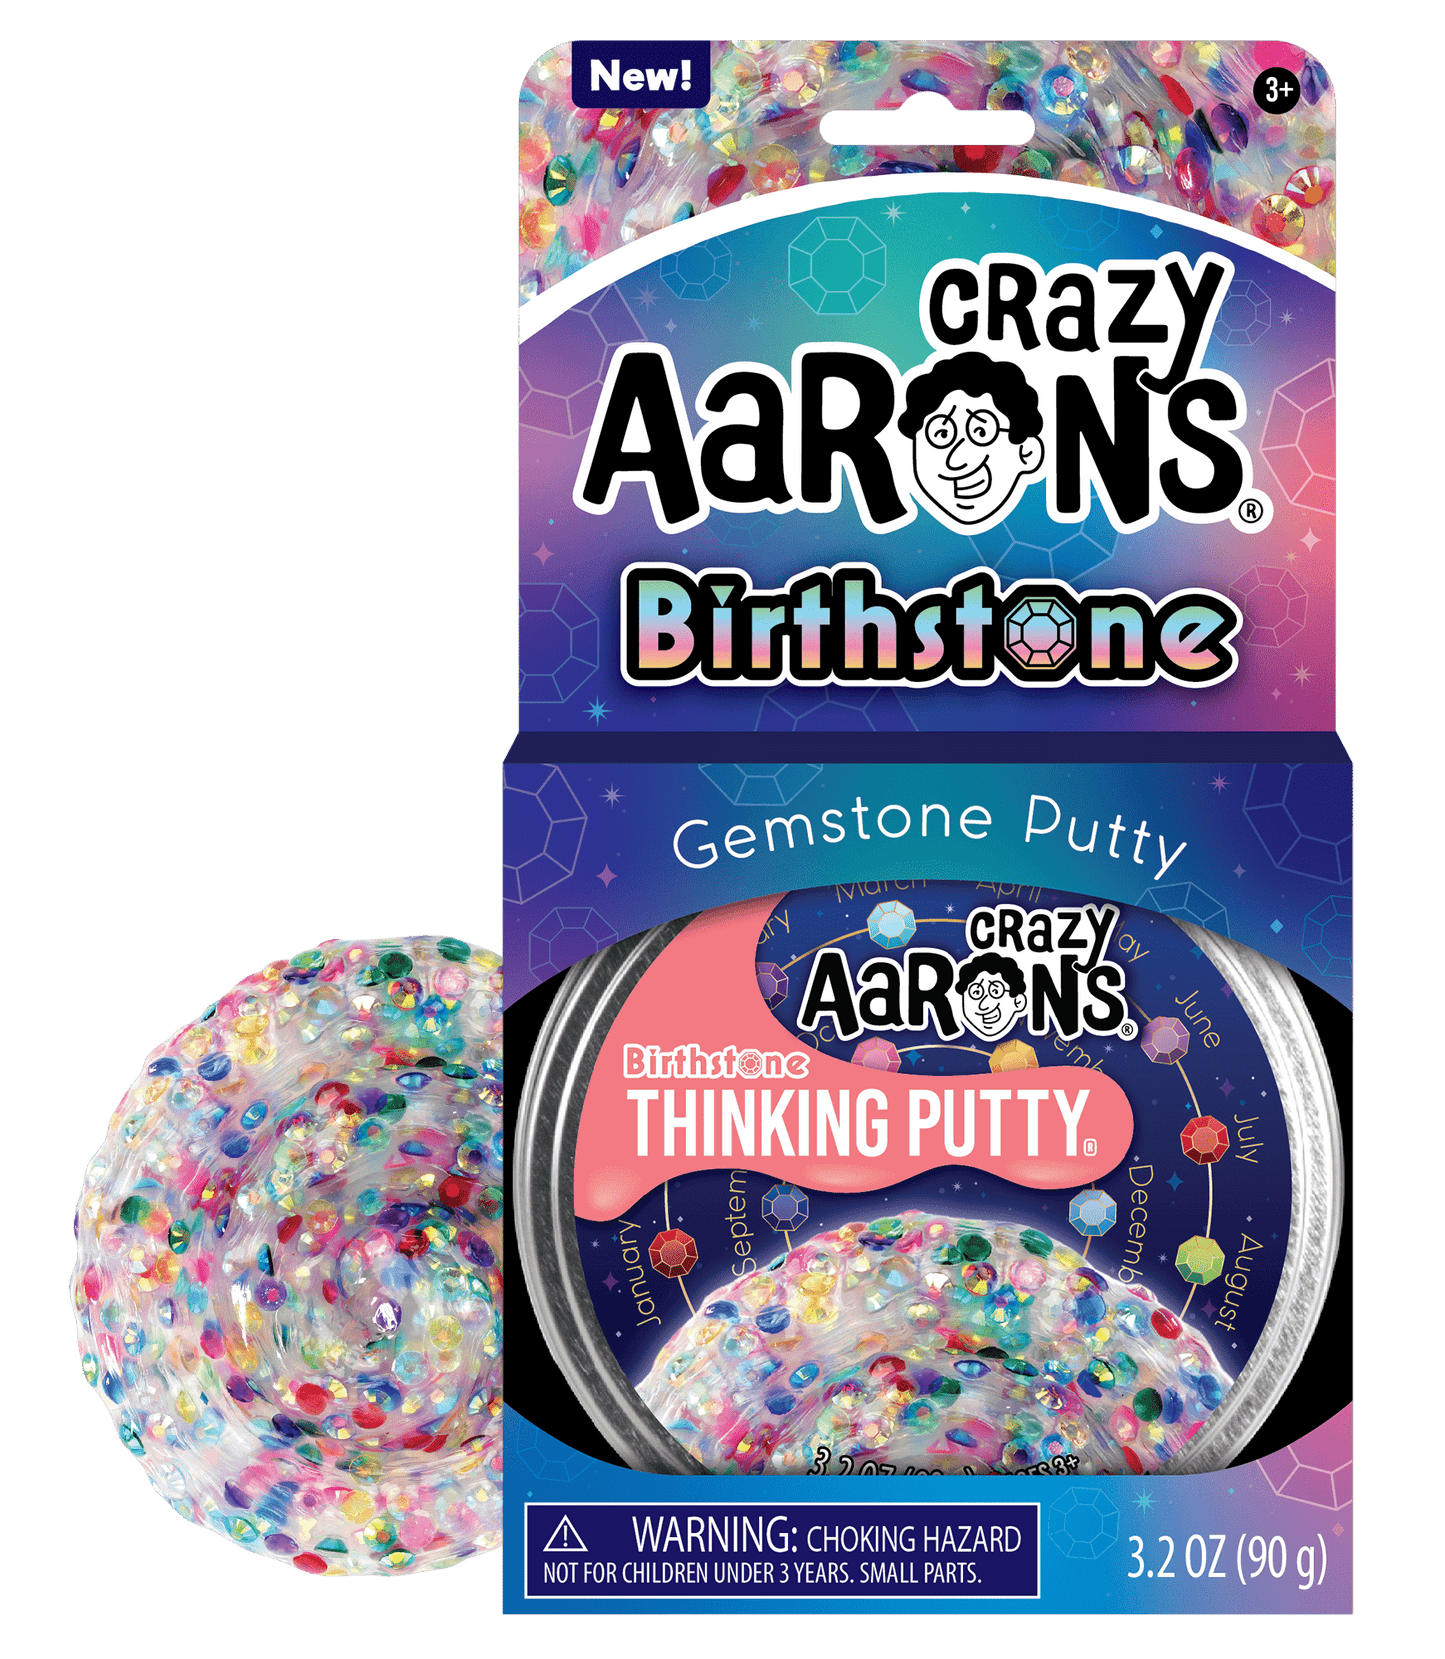 Crazy Aaron's Gemstone Putty BIRTHSTONE